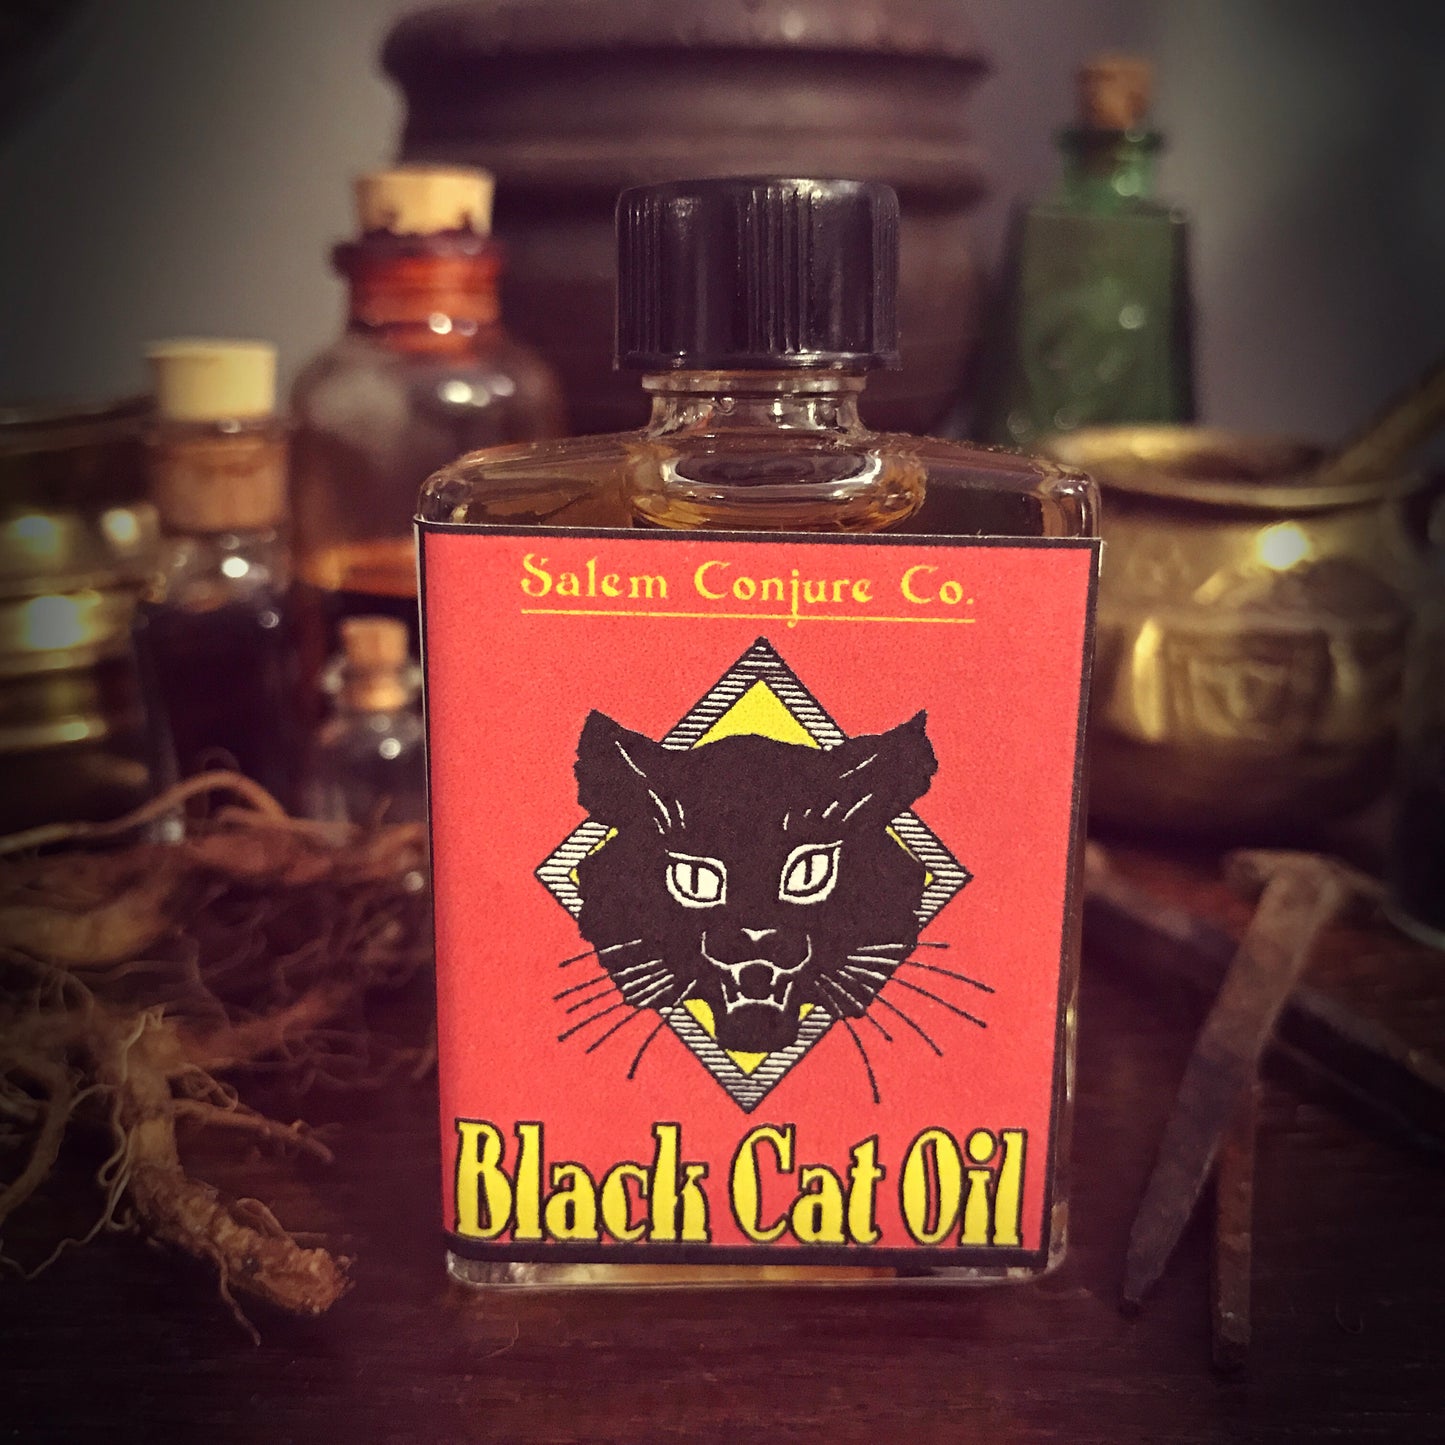 Black Cat Oil